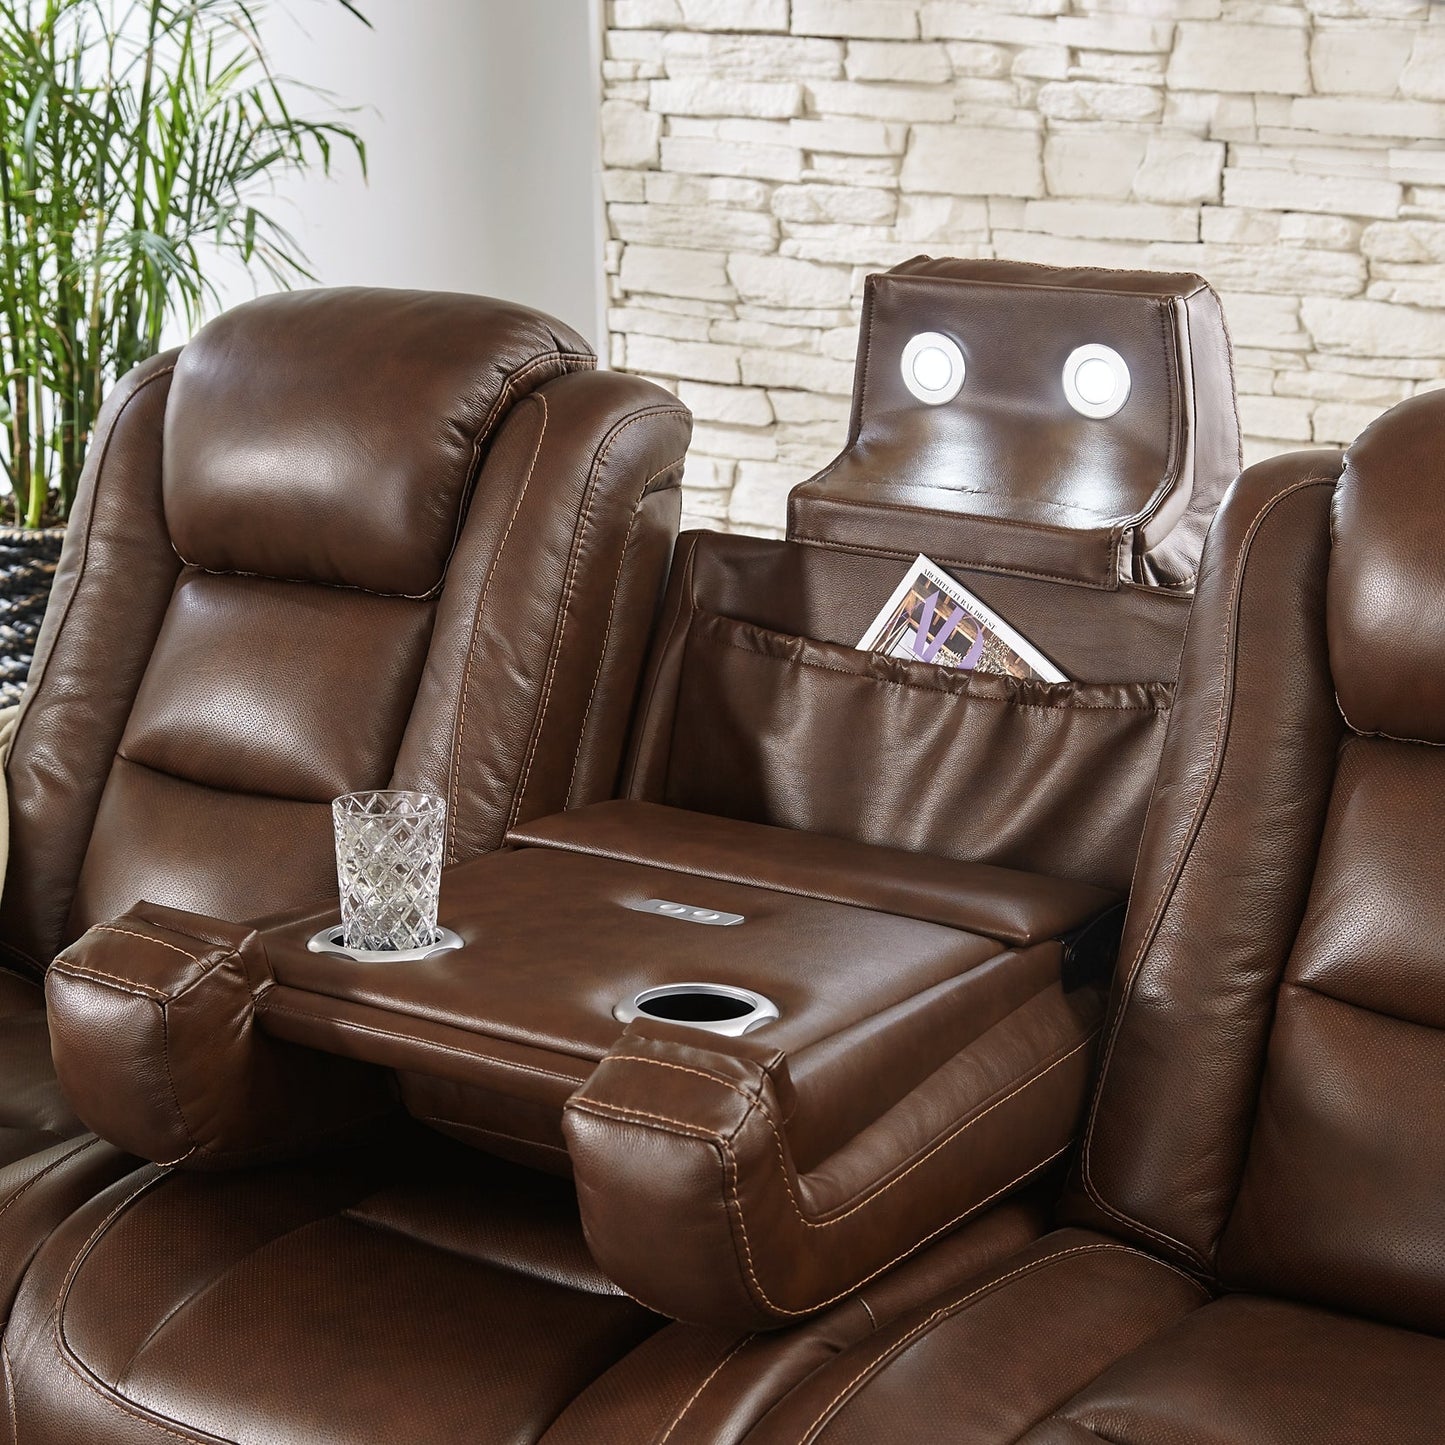 The Man-Den PWR REC Sofa with ADJ Headrest Smyrna Furniture Outlet